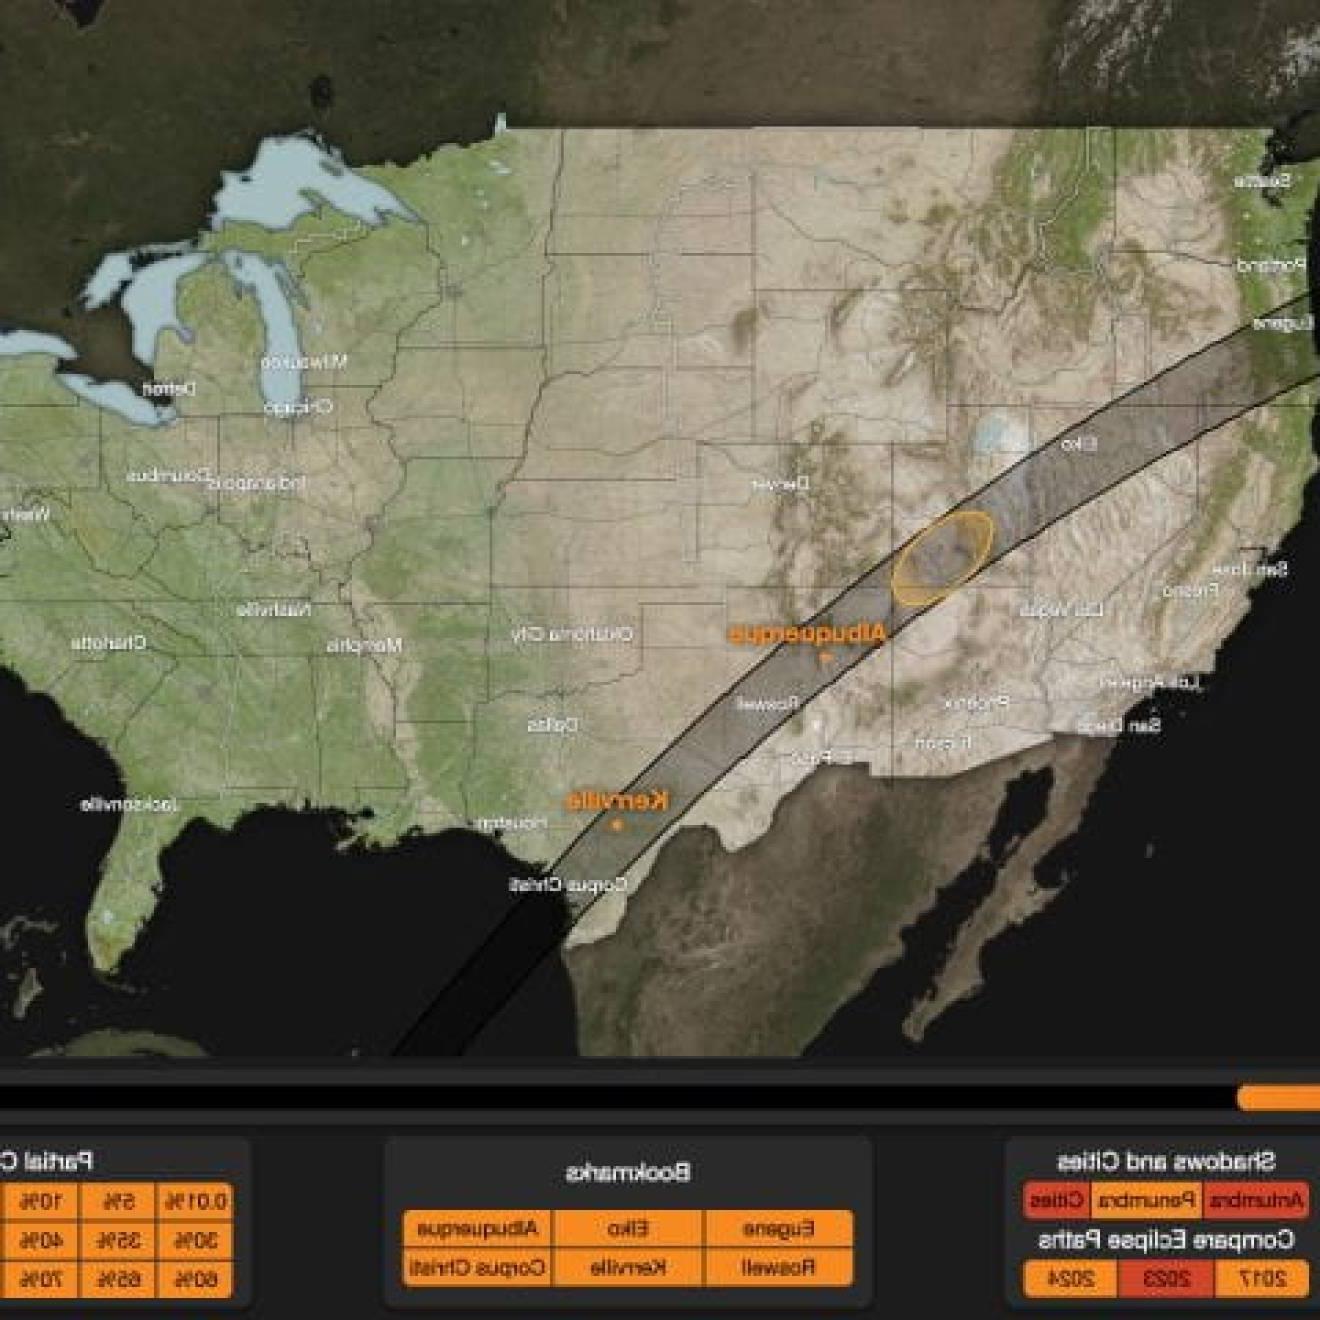 即将到来的日食经过美国的路径图